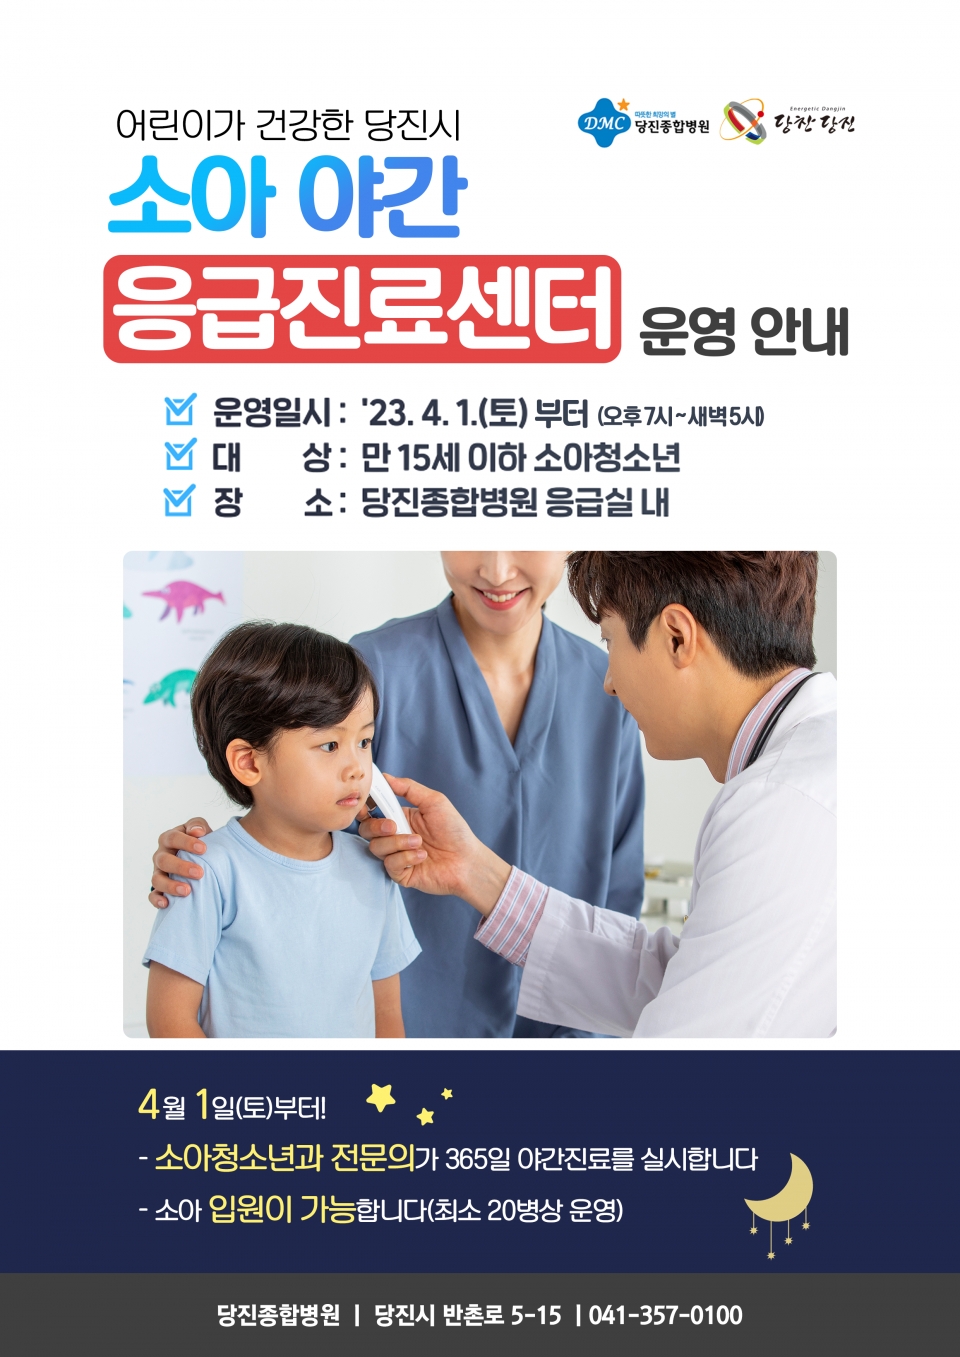 소아 야간응급진료센터 홍보물. ⓒ당진시청 제공